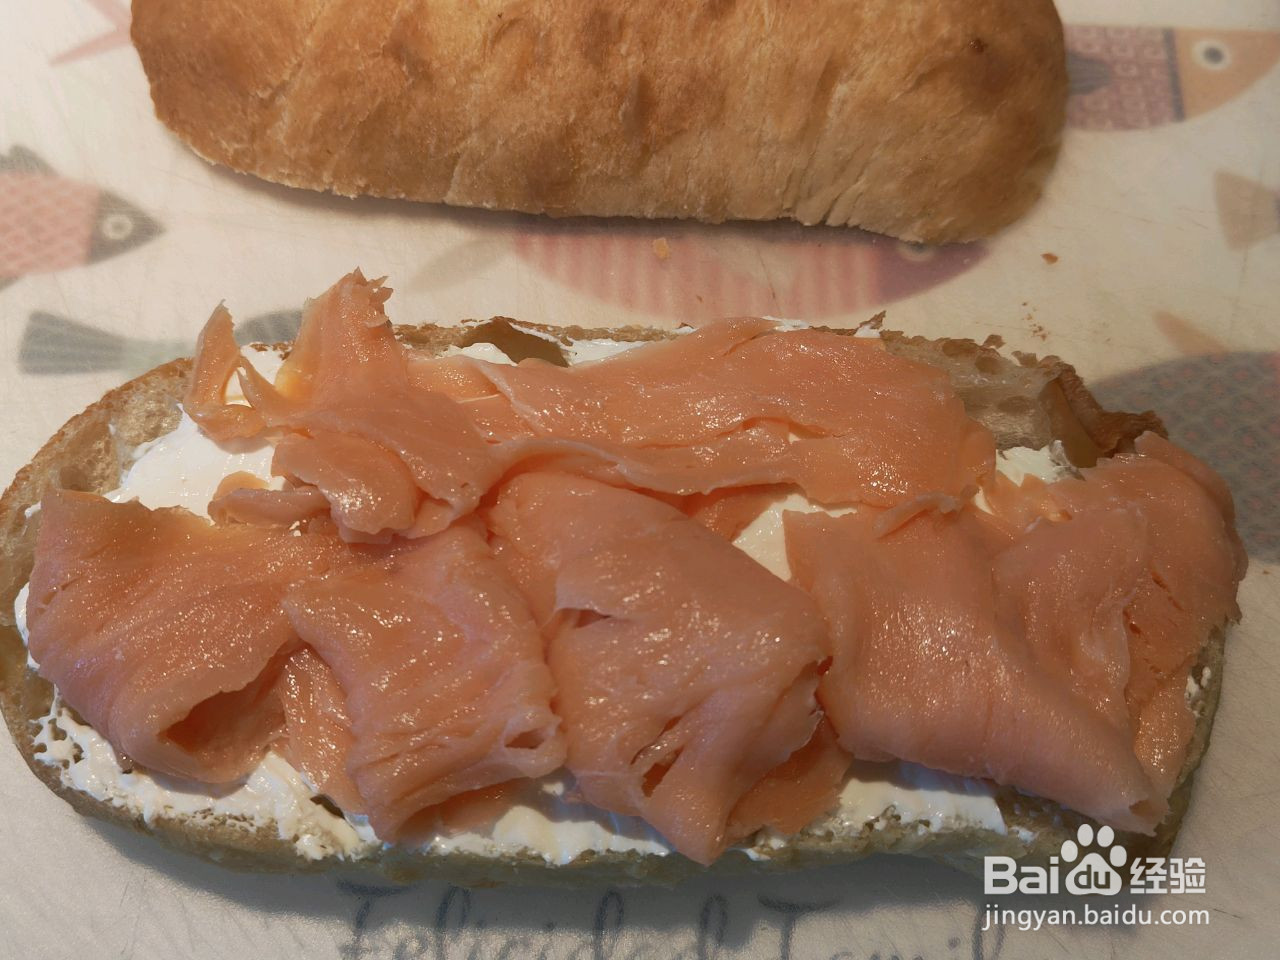 法式三文鱼炒蛋三明治的做法